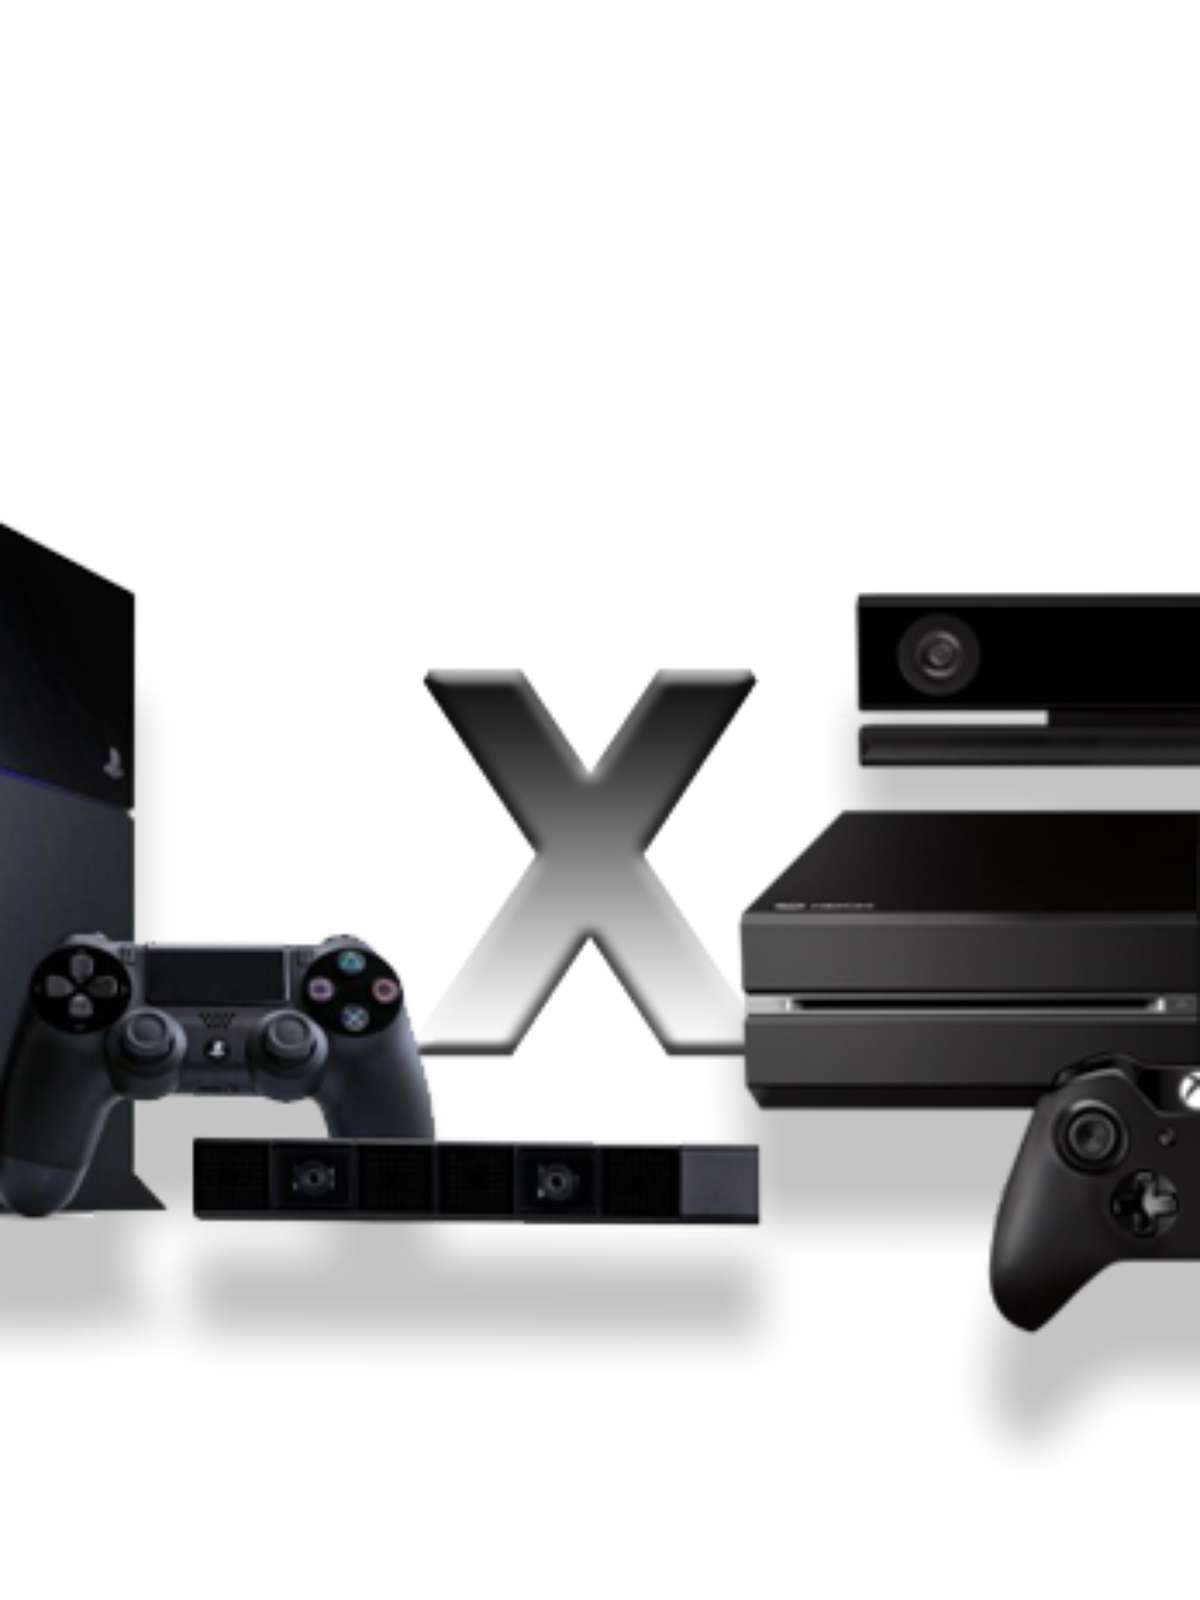 GTA V chega para PlayStation 5 e Xbox Series S/X em 11 de novembro - Drops  de Jogos